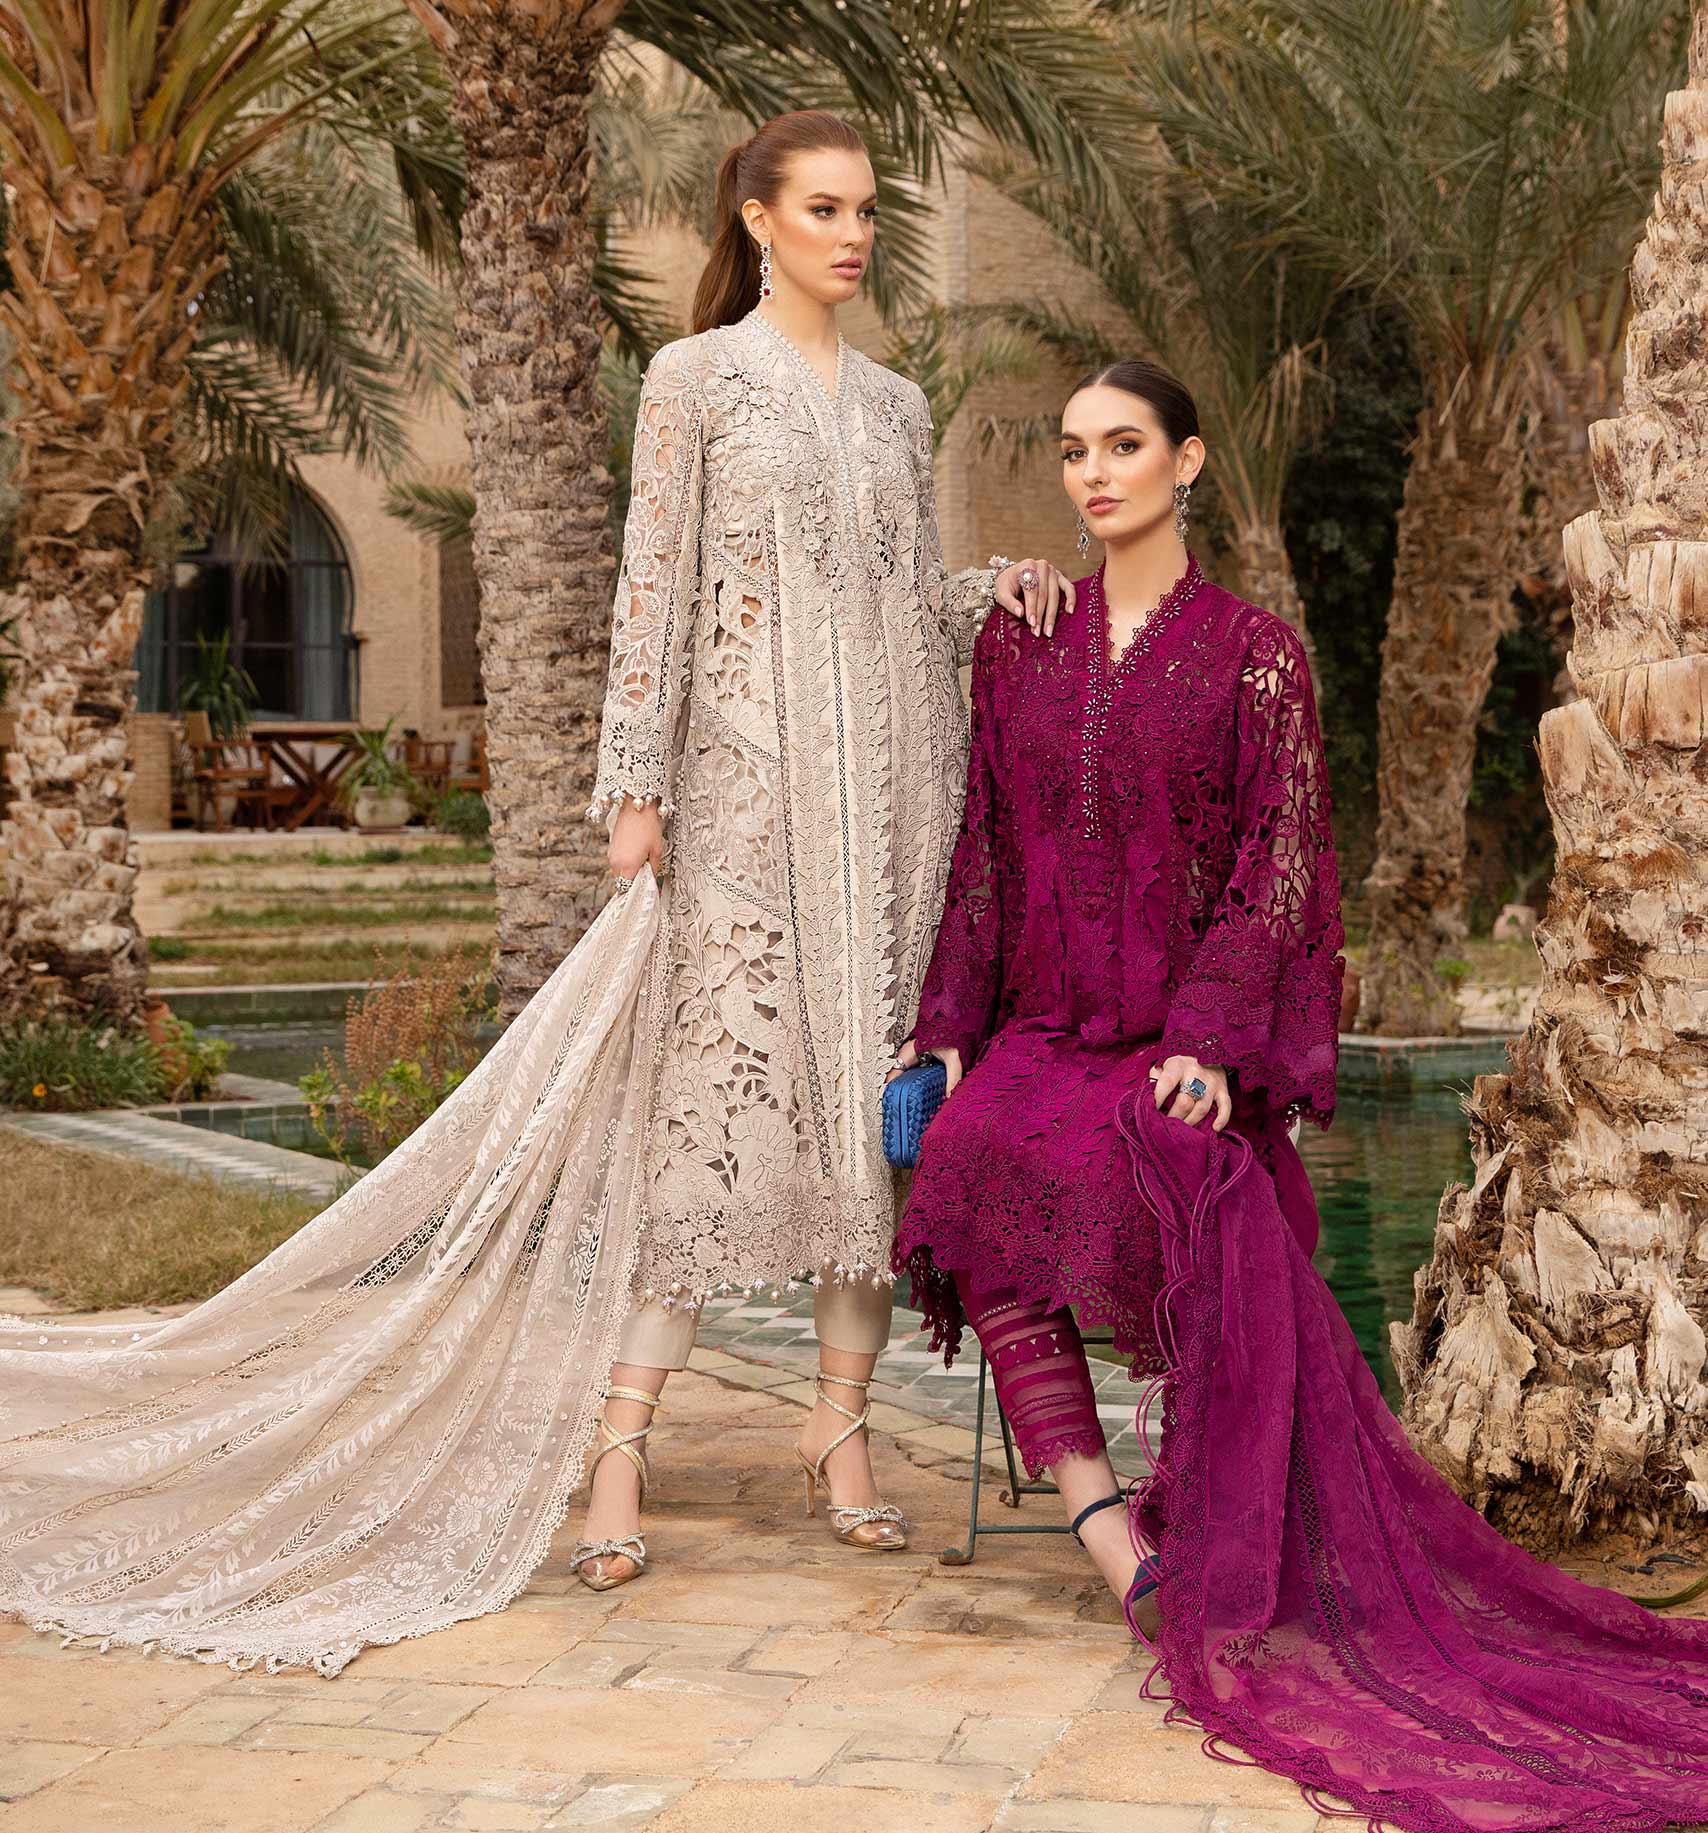 Lace Design On Plain Suits || Lace Design On Kameez || Punjabi Suit Design  2021 - YouTube